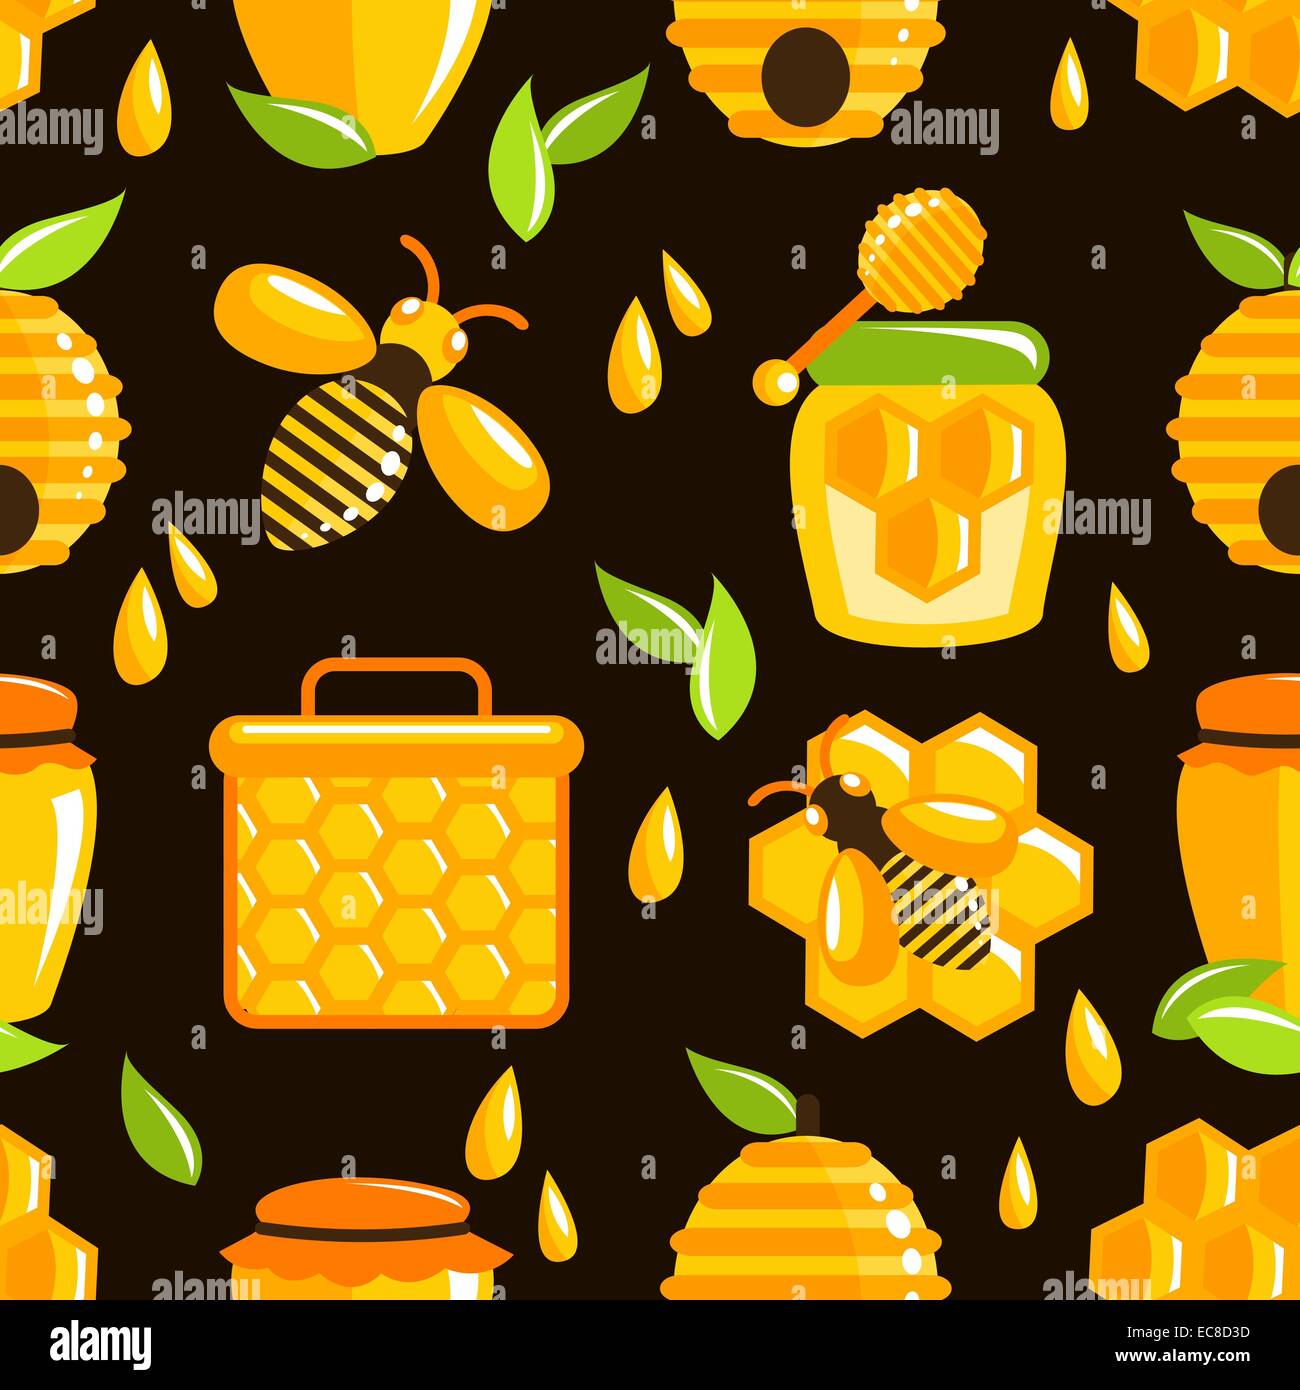 https://c8.alamy.com/comp/EC8D3D/decorative-honey-bumble-bee-honeycomb-agriculture-food-seamless-pattern-EC8D3D.jpg